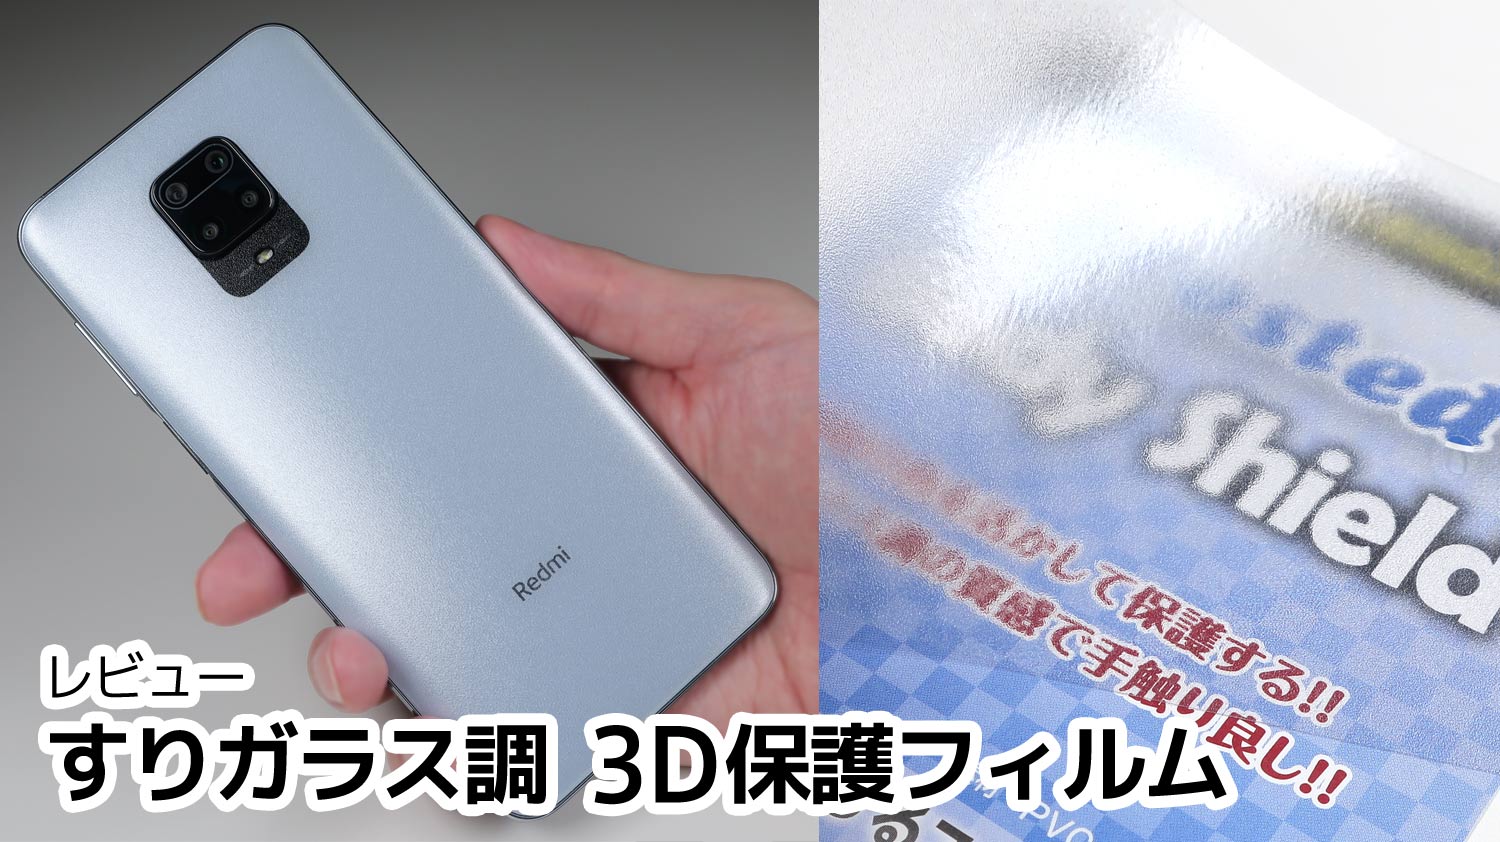 レビュー】3D曲面対応のマット系保護フィルム「PDA工房 Body Shield Frosted」をXiaomi Redmi note  9Sの背面ガラスに貼り付け。